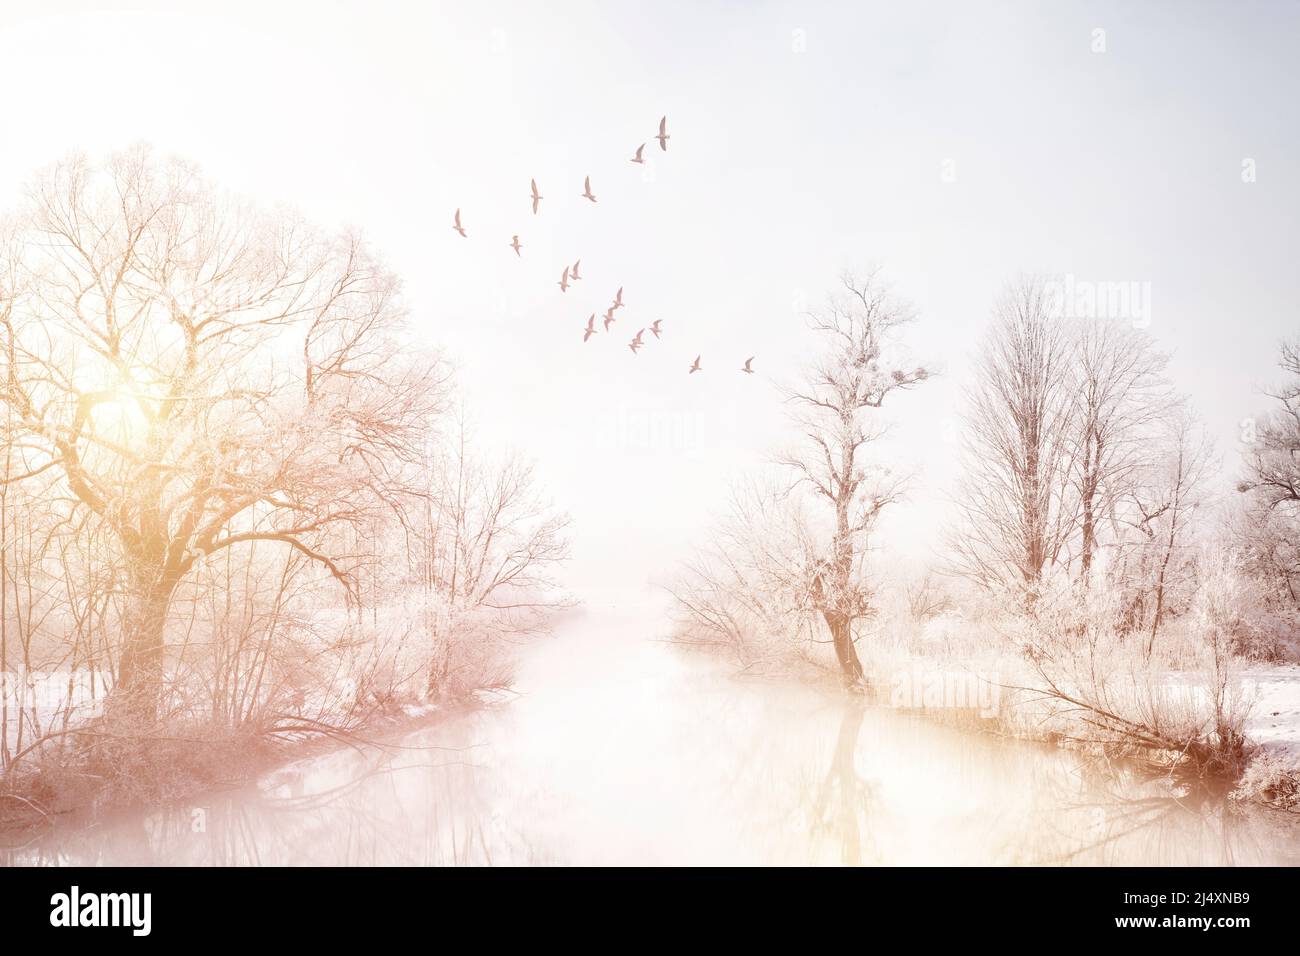 ARTE FOTOGRAFICA: Inverno sul fiume Loisach che entra nel lago di Kochel, alta Baviera, Germania Foto Stock